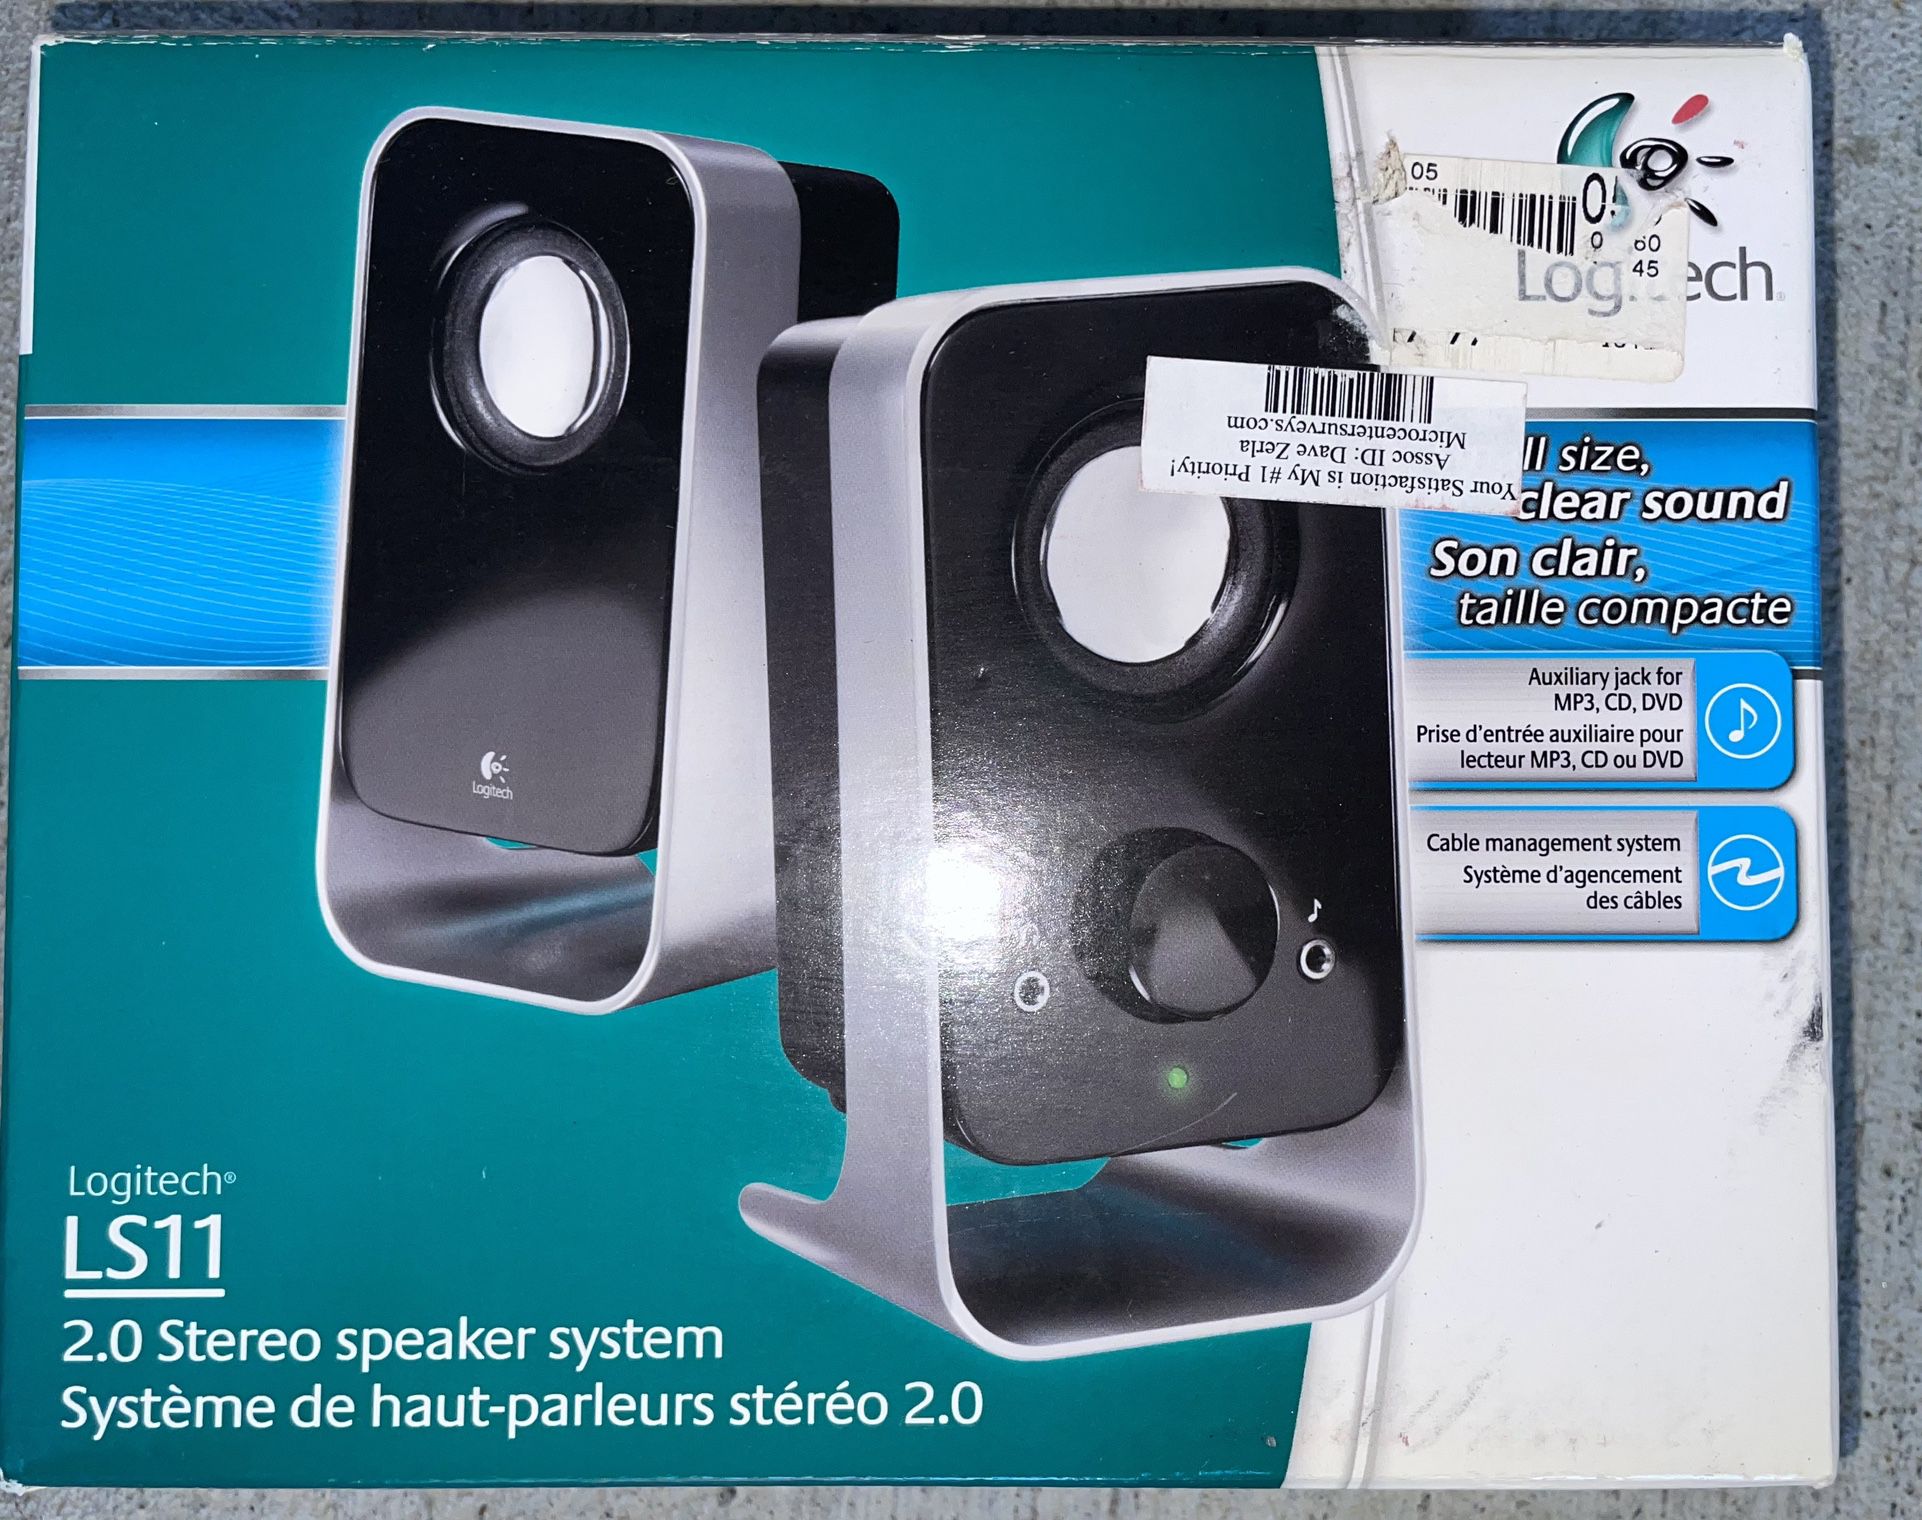 Logitech LS11 2.0 stereo speaker system